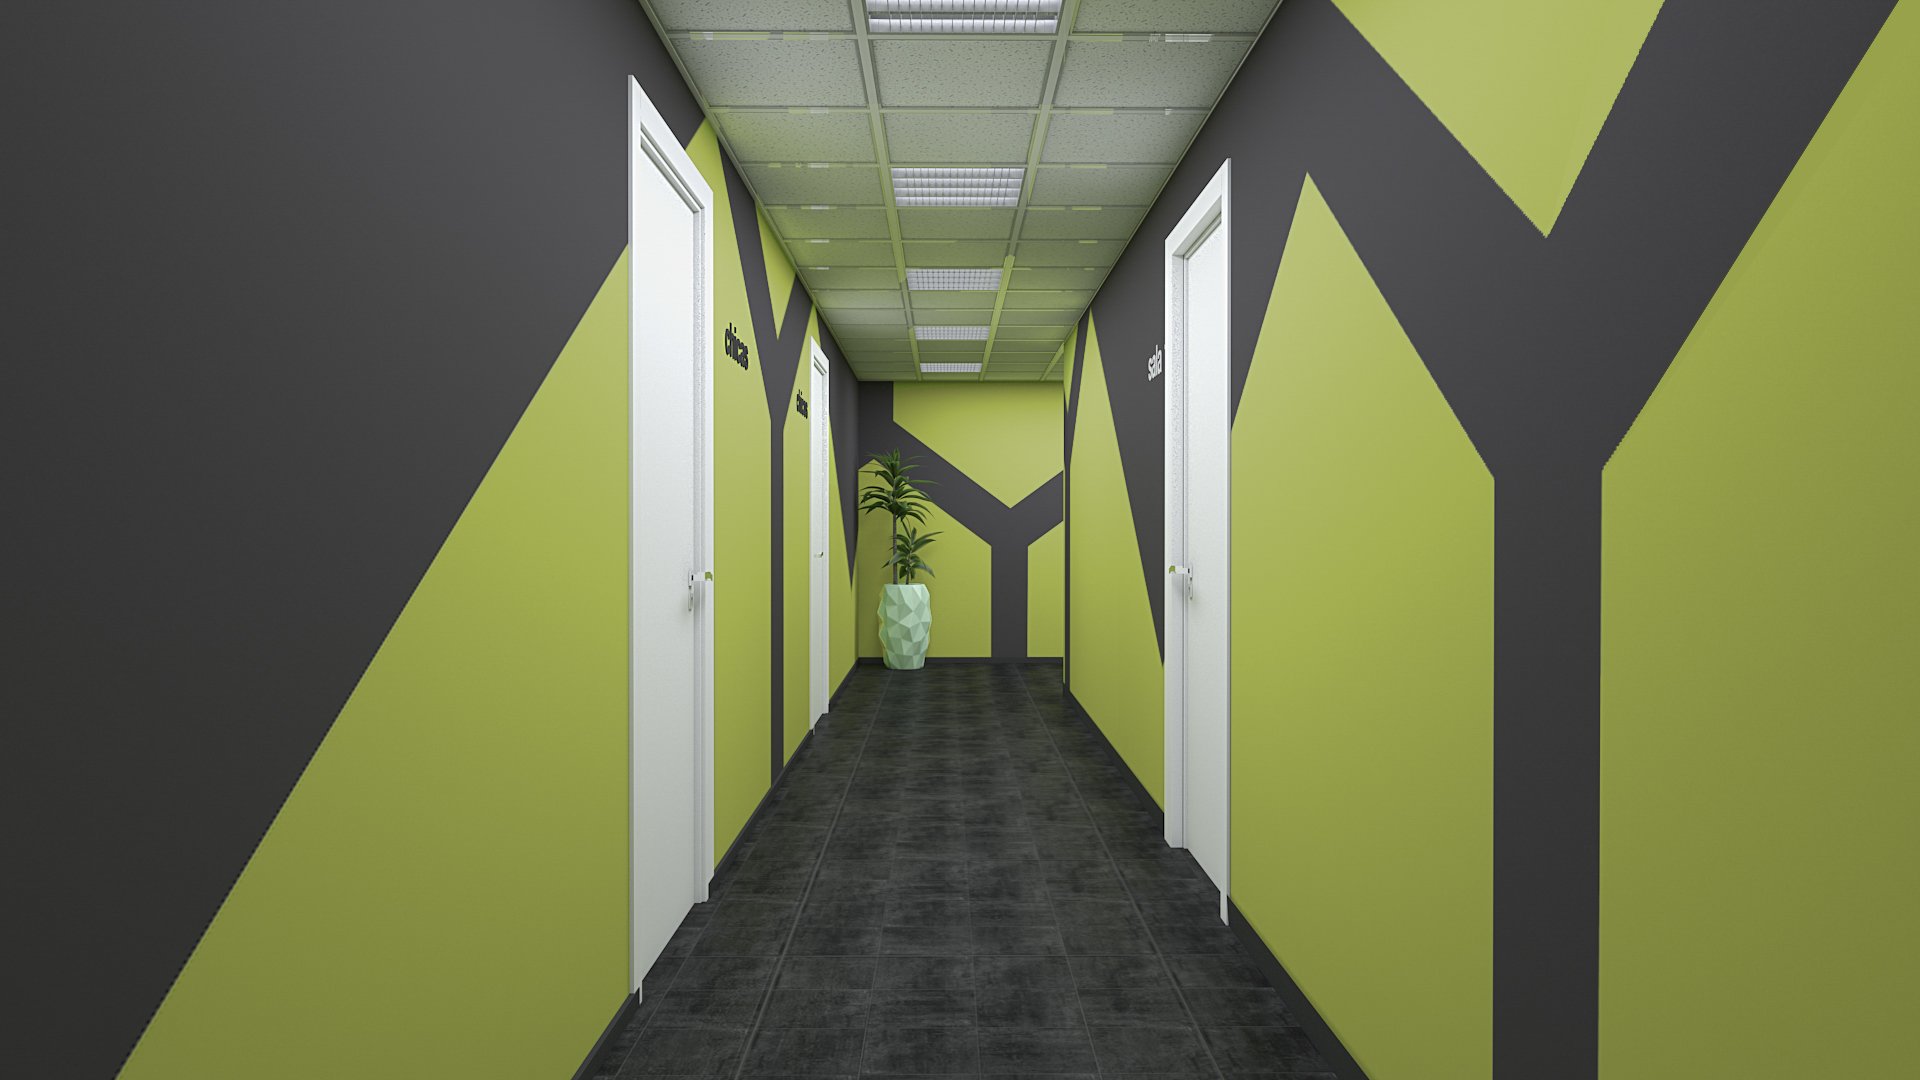 Render del diseño de interior del pasillo de Crossfit Ambit.